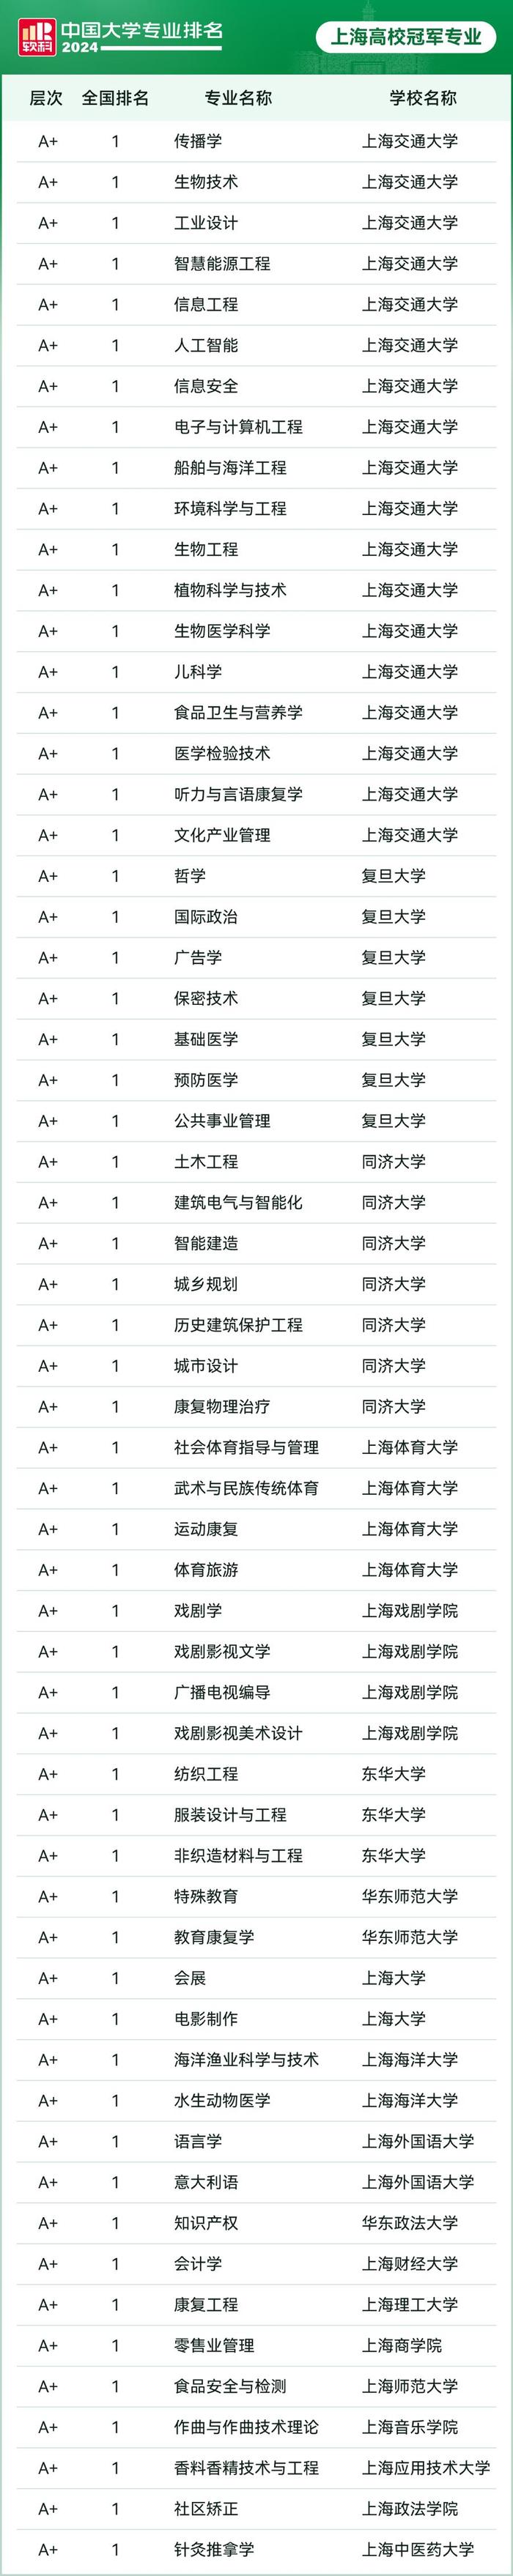 又一机构国内高校专业排名发布，上海高校60个专业排全国第一